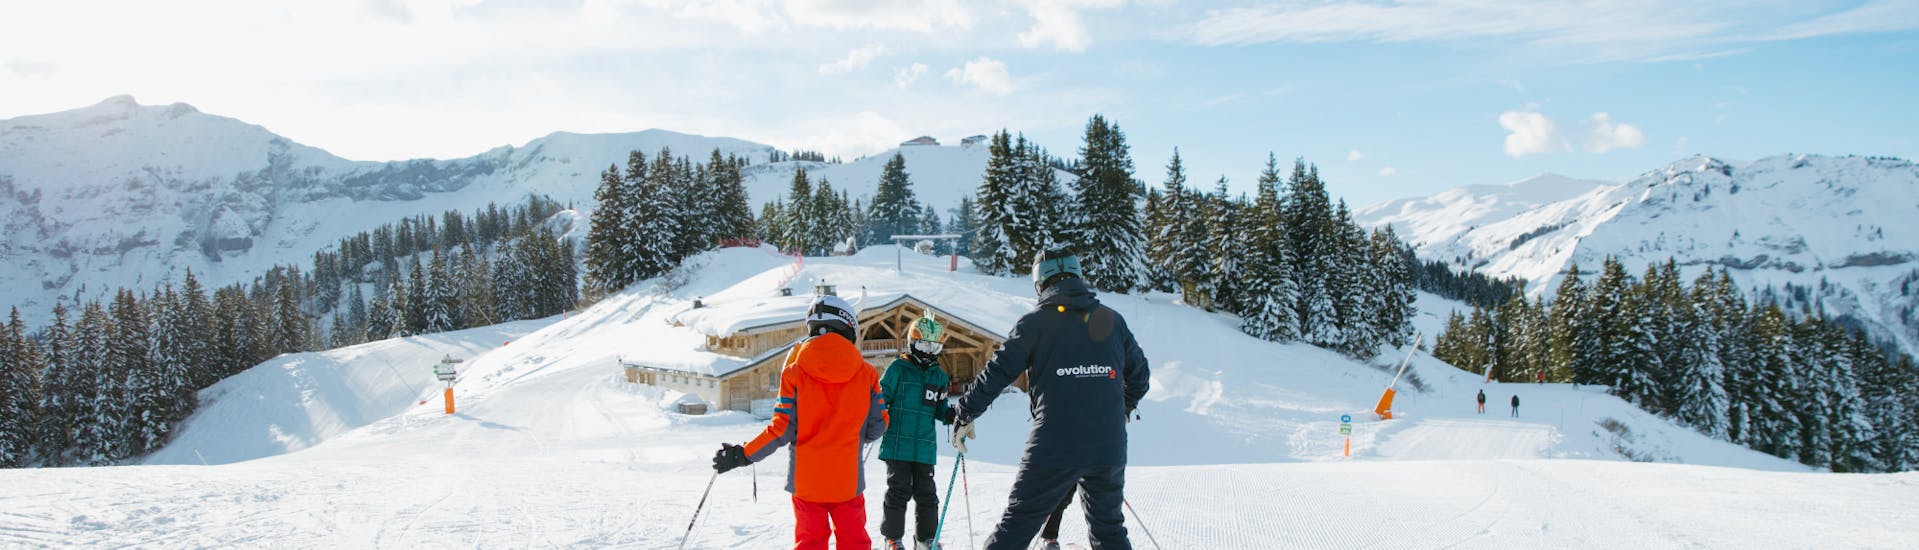 Clases de esquí privadas para niños a partir de 4 años para todos los niveles.